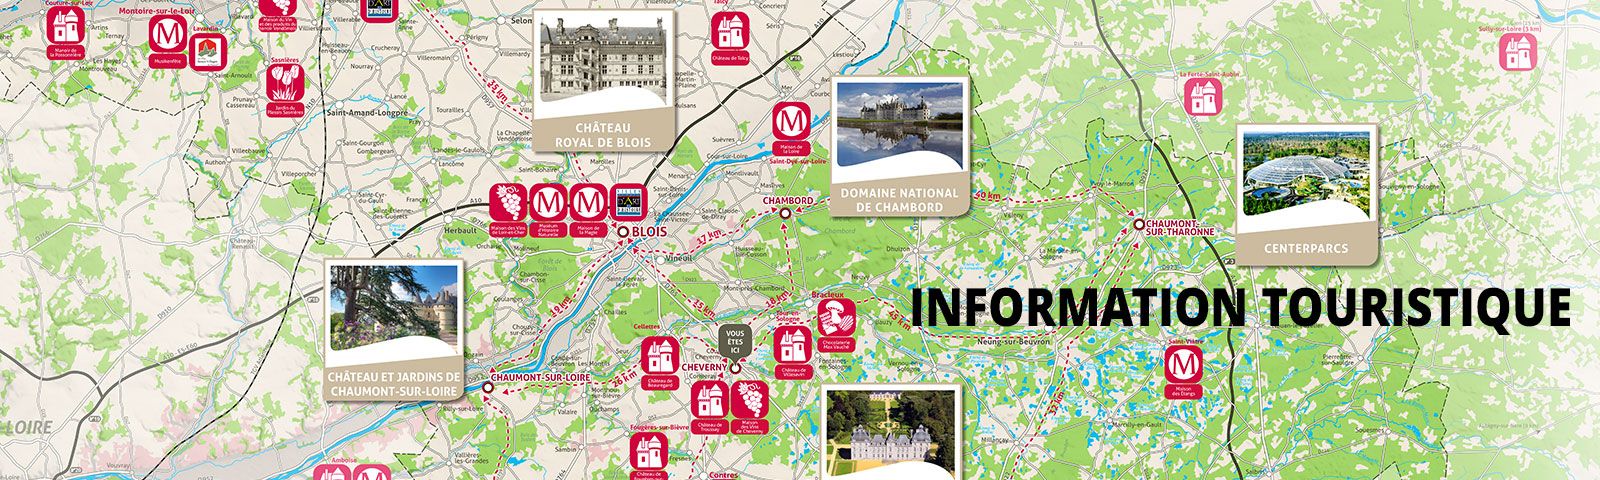 Cartographie touristique du coeur Val de Loire